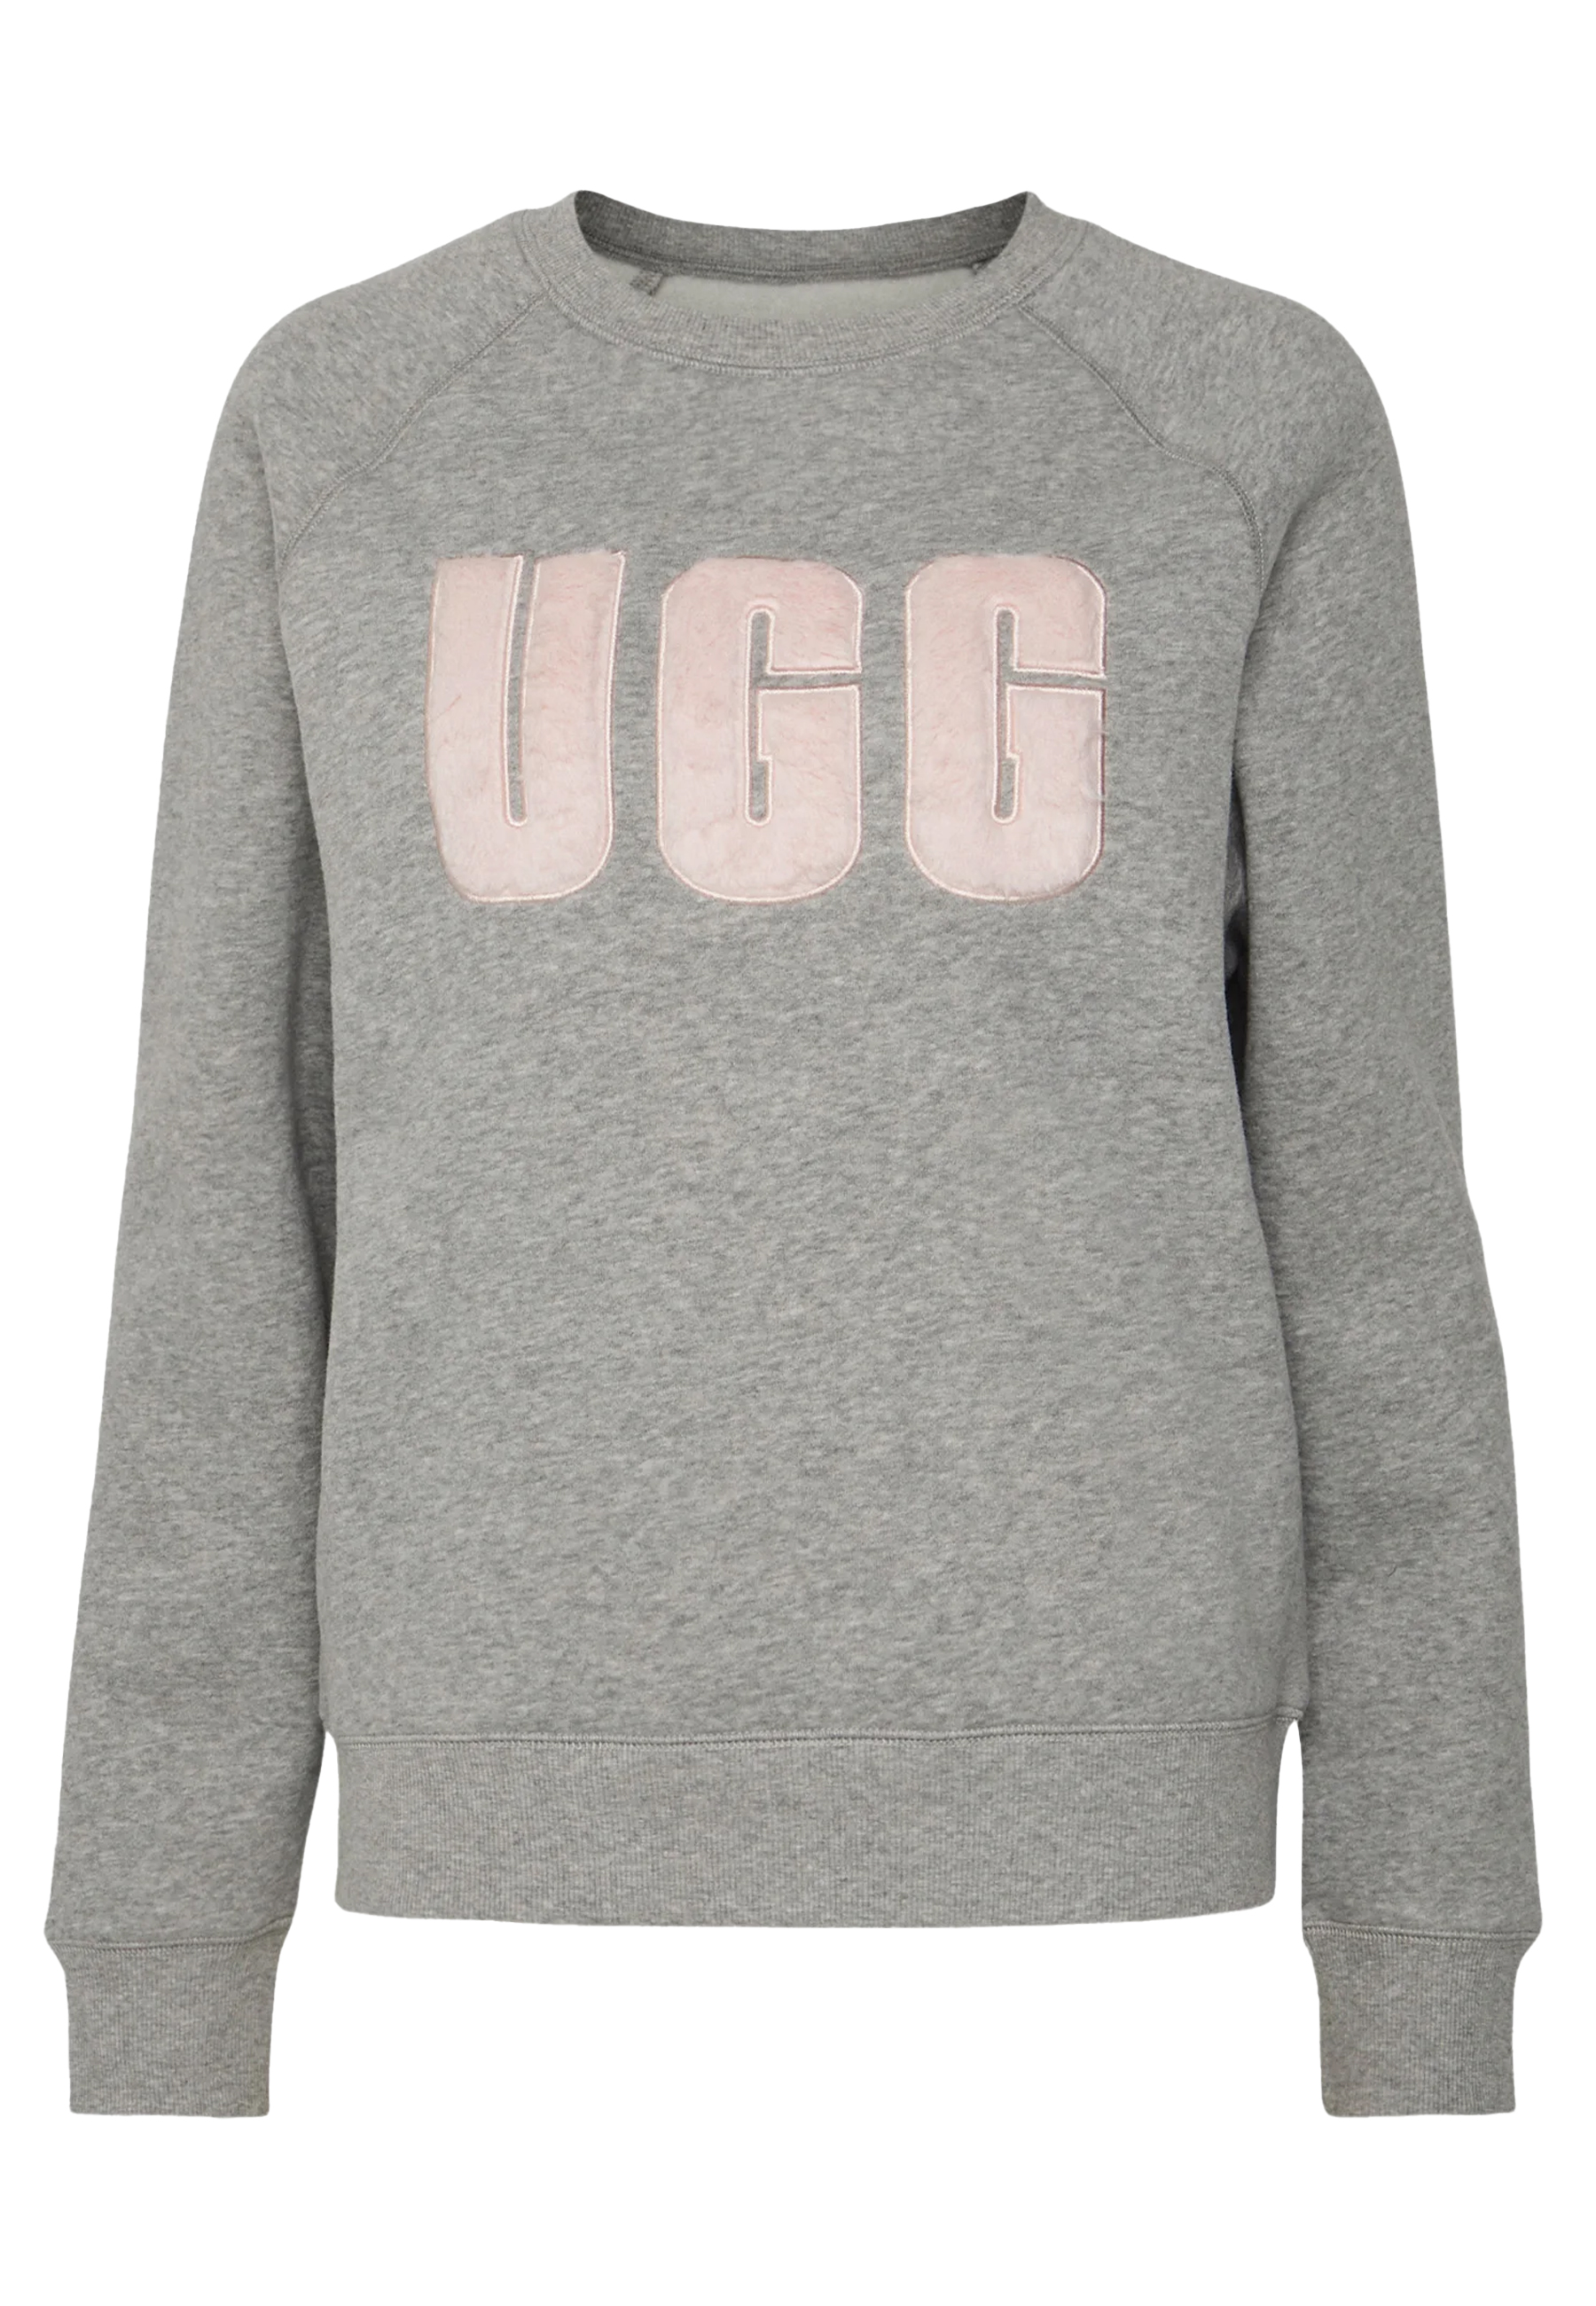 Ugg Madeline fuzzy sweaters grijs Dames maat S